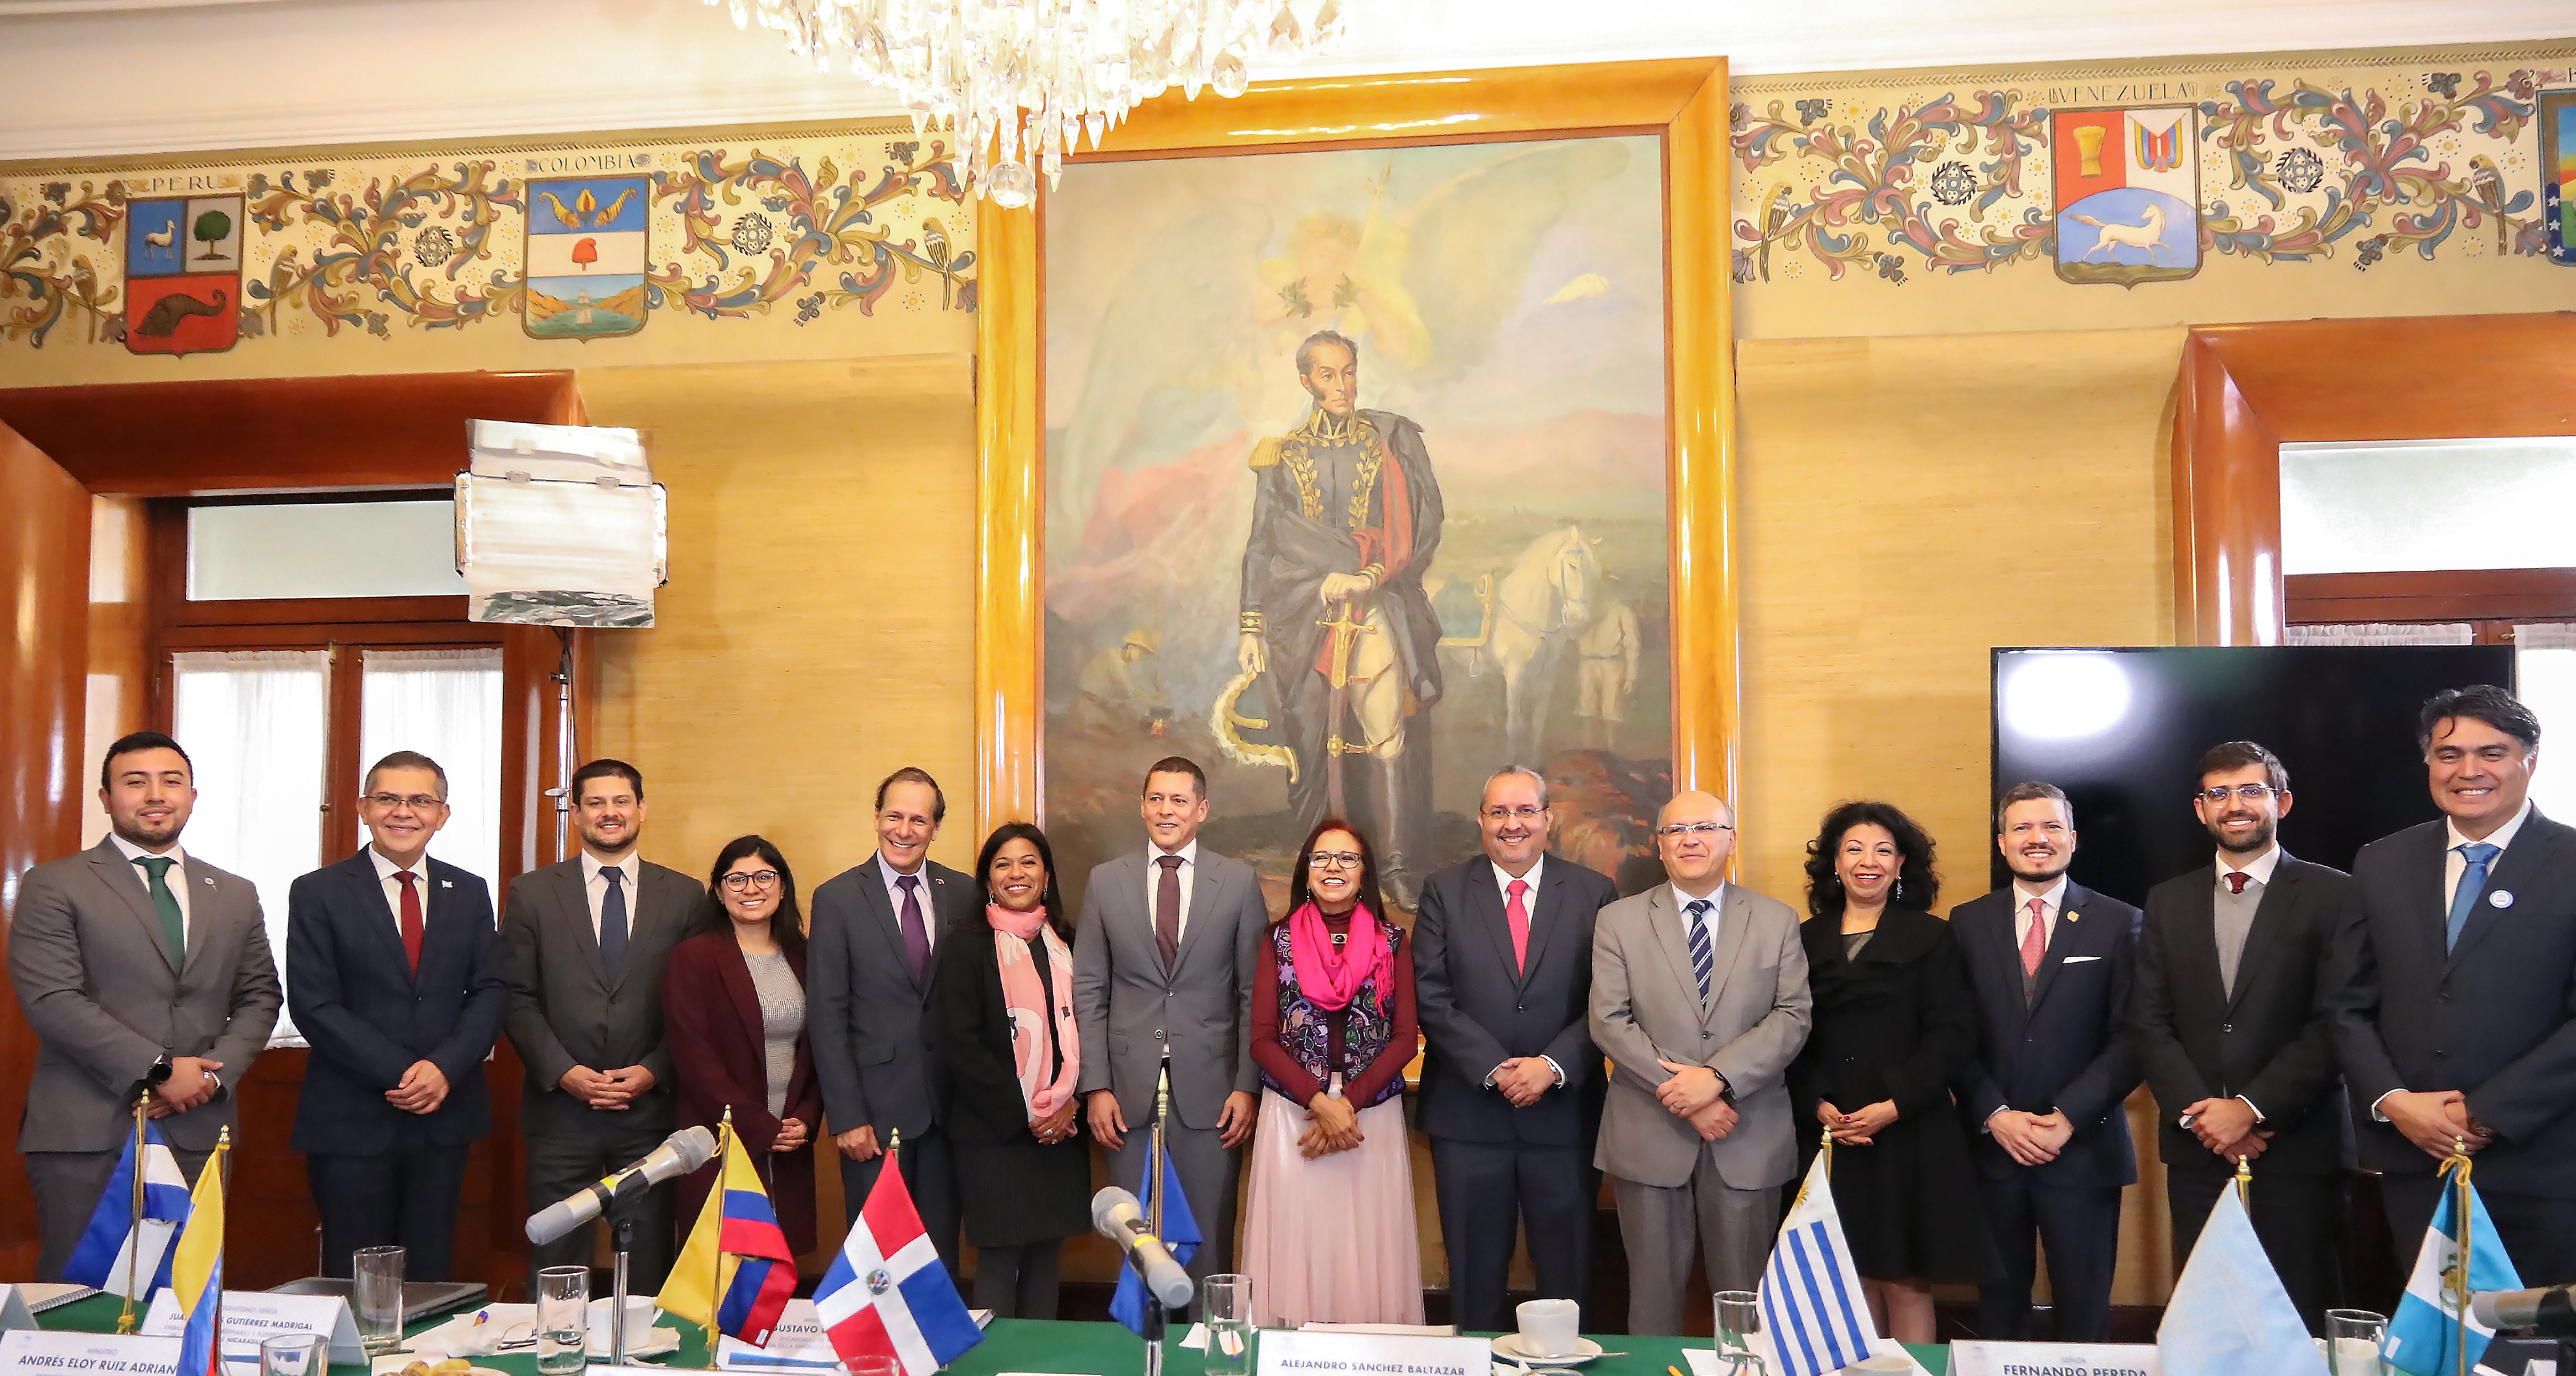 •	Encabeza secretaria de Educación Pública, Leticia Ramírez Amaya, sesión extraordinaria del Consejo de Administración del Crefal, instancia que ratificó la designación